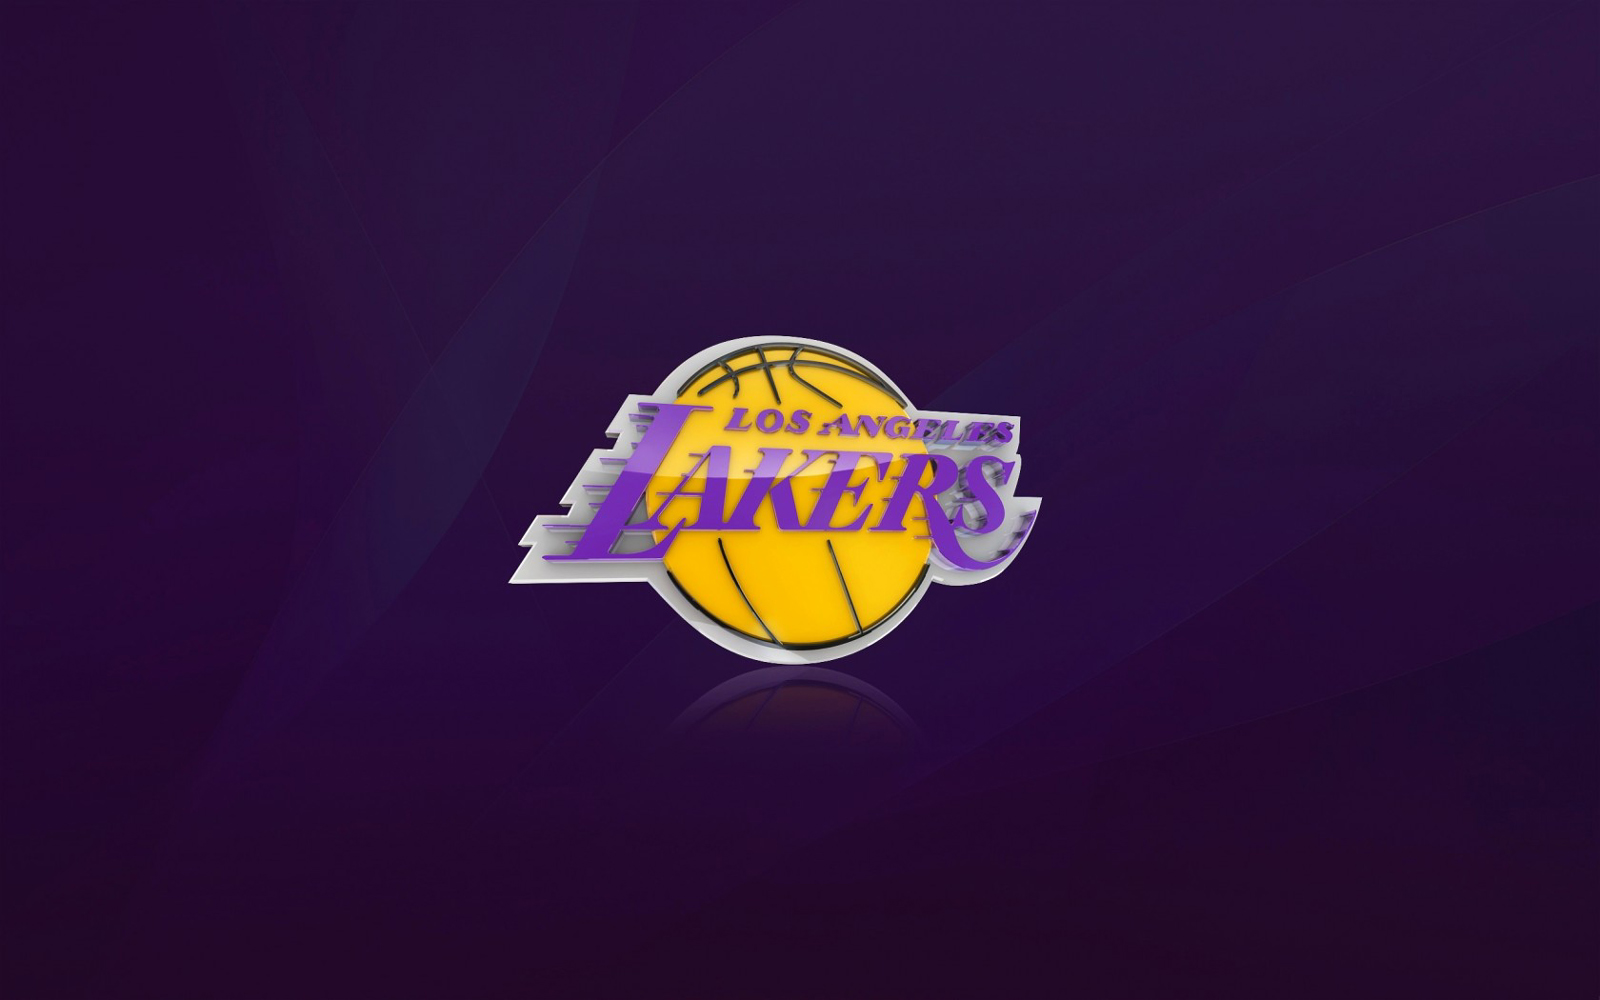 39 Lakers Logo Wallpaper On Wallpapersafari